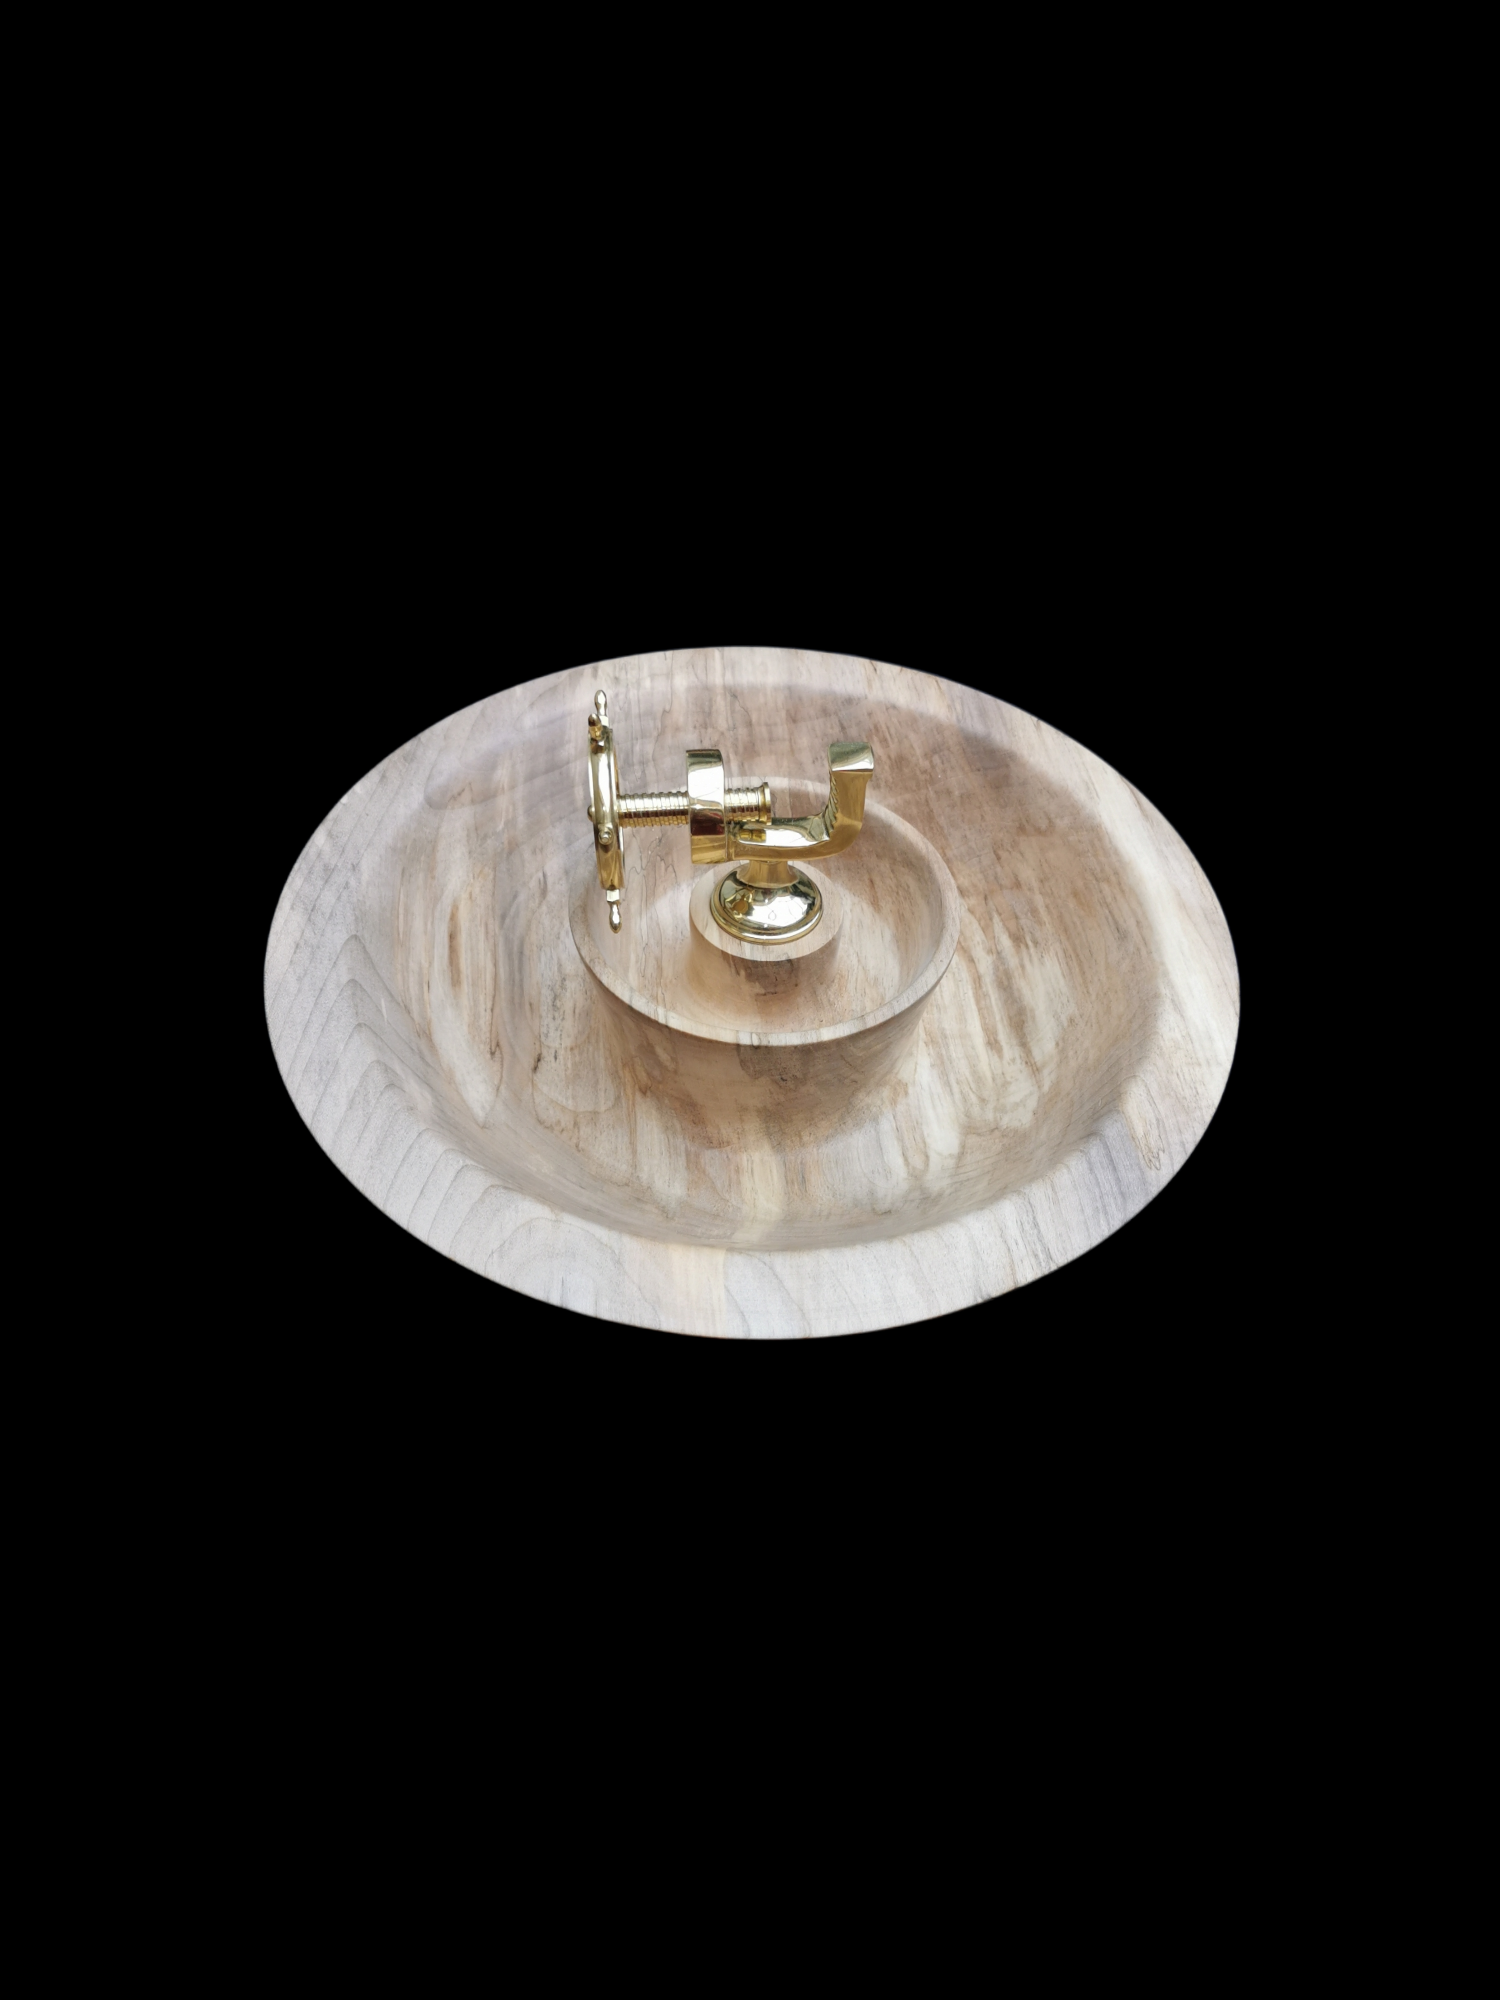 Wood Turned Nutcracker Bowl with Brass Ships Wheel Nutcracker